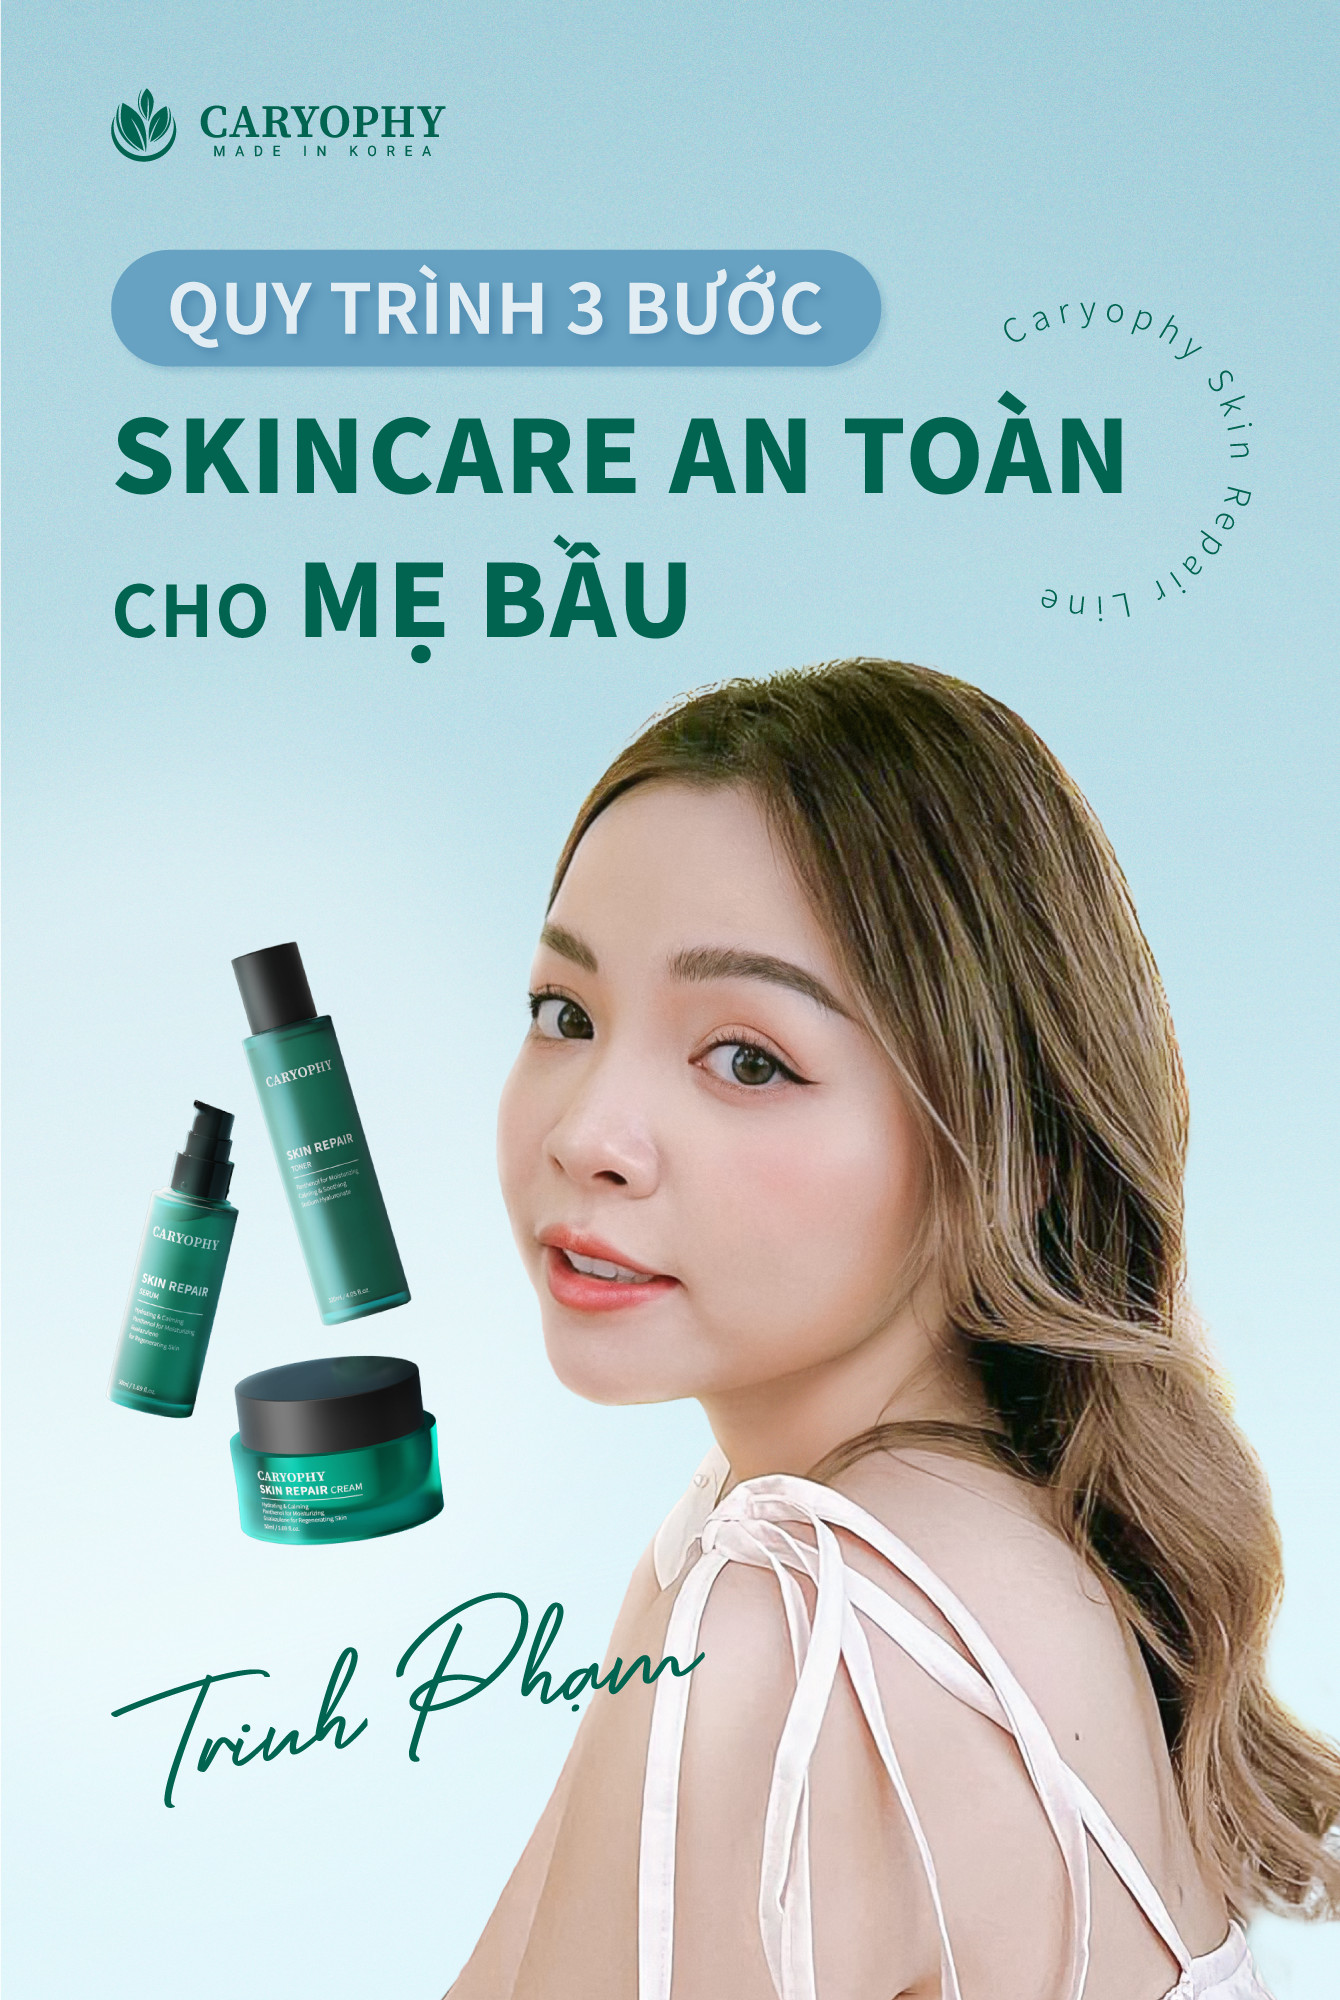 beauty-blogger-trinh-pham-chon-kem-duong-caryophy-skin-repair